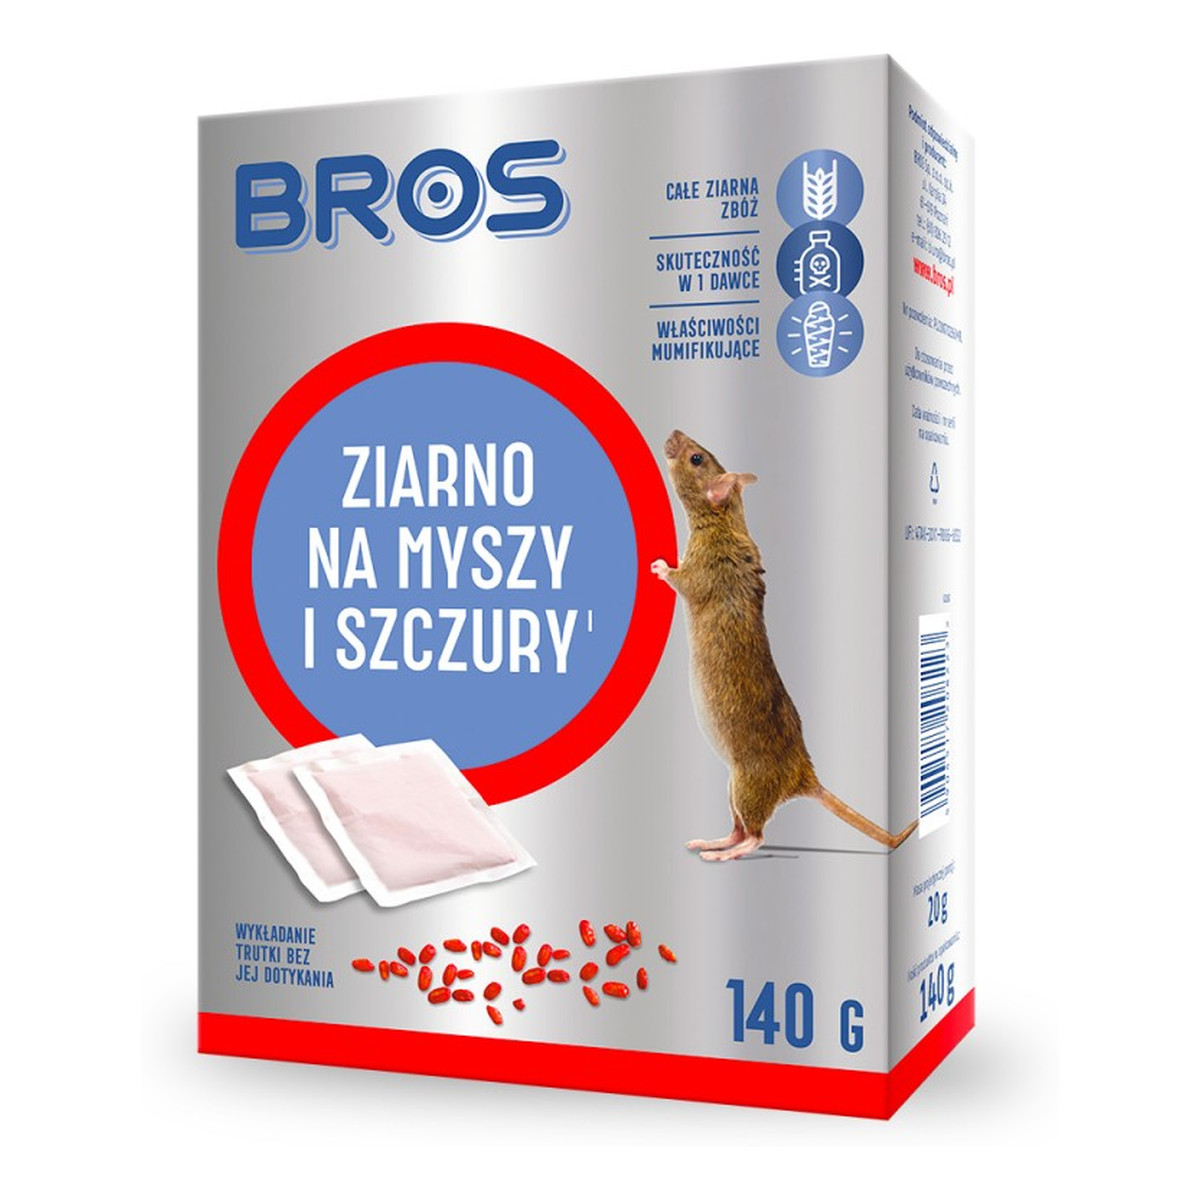 Bros Ziarno na myszy i szczury 140g